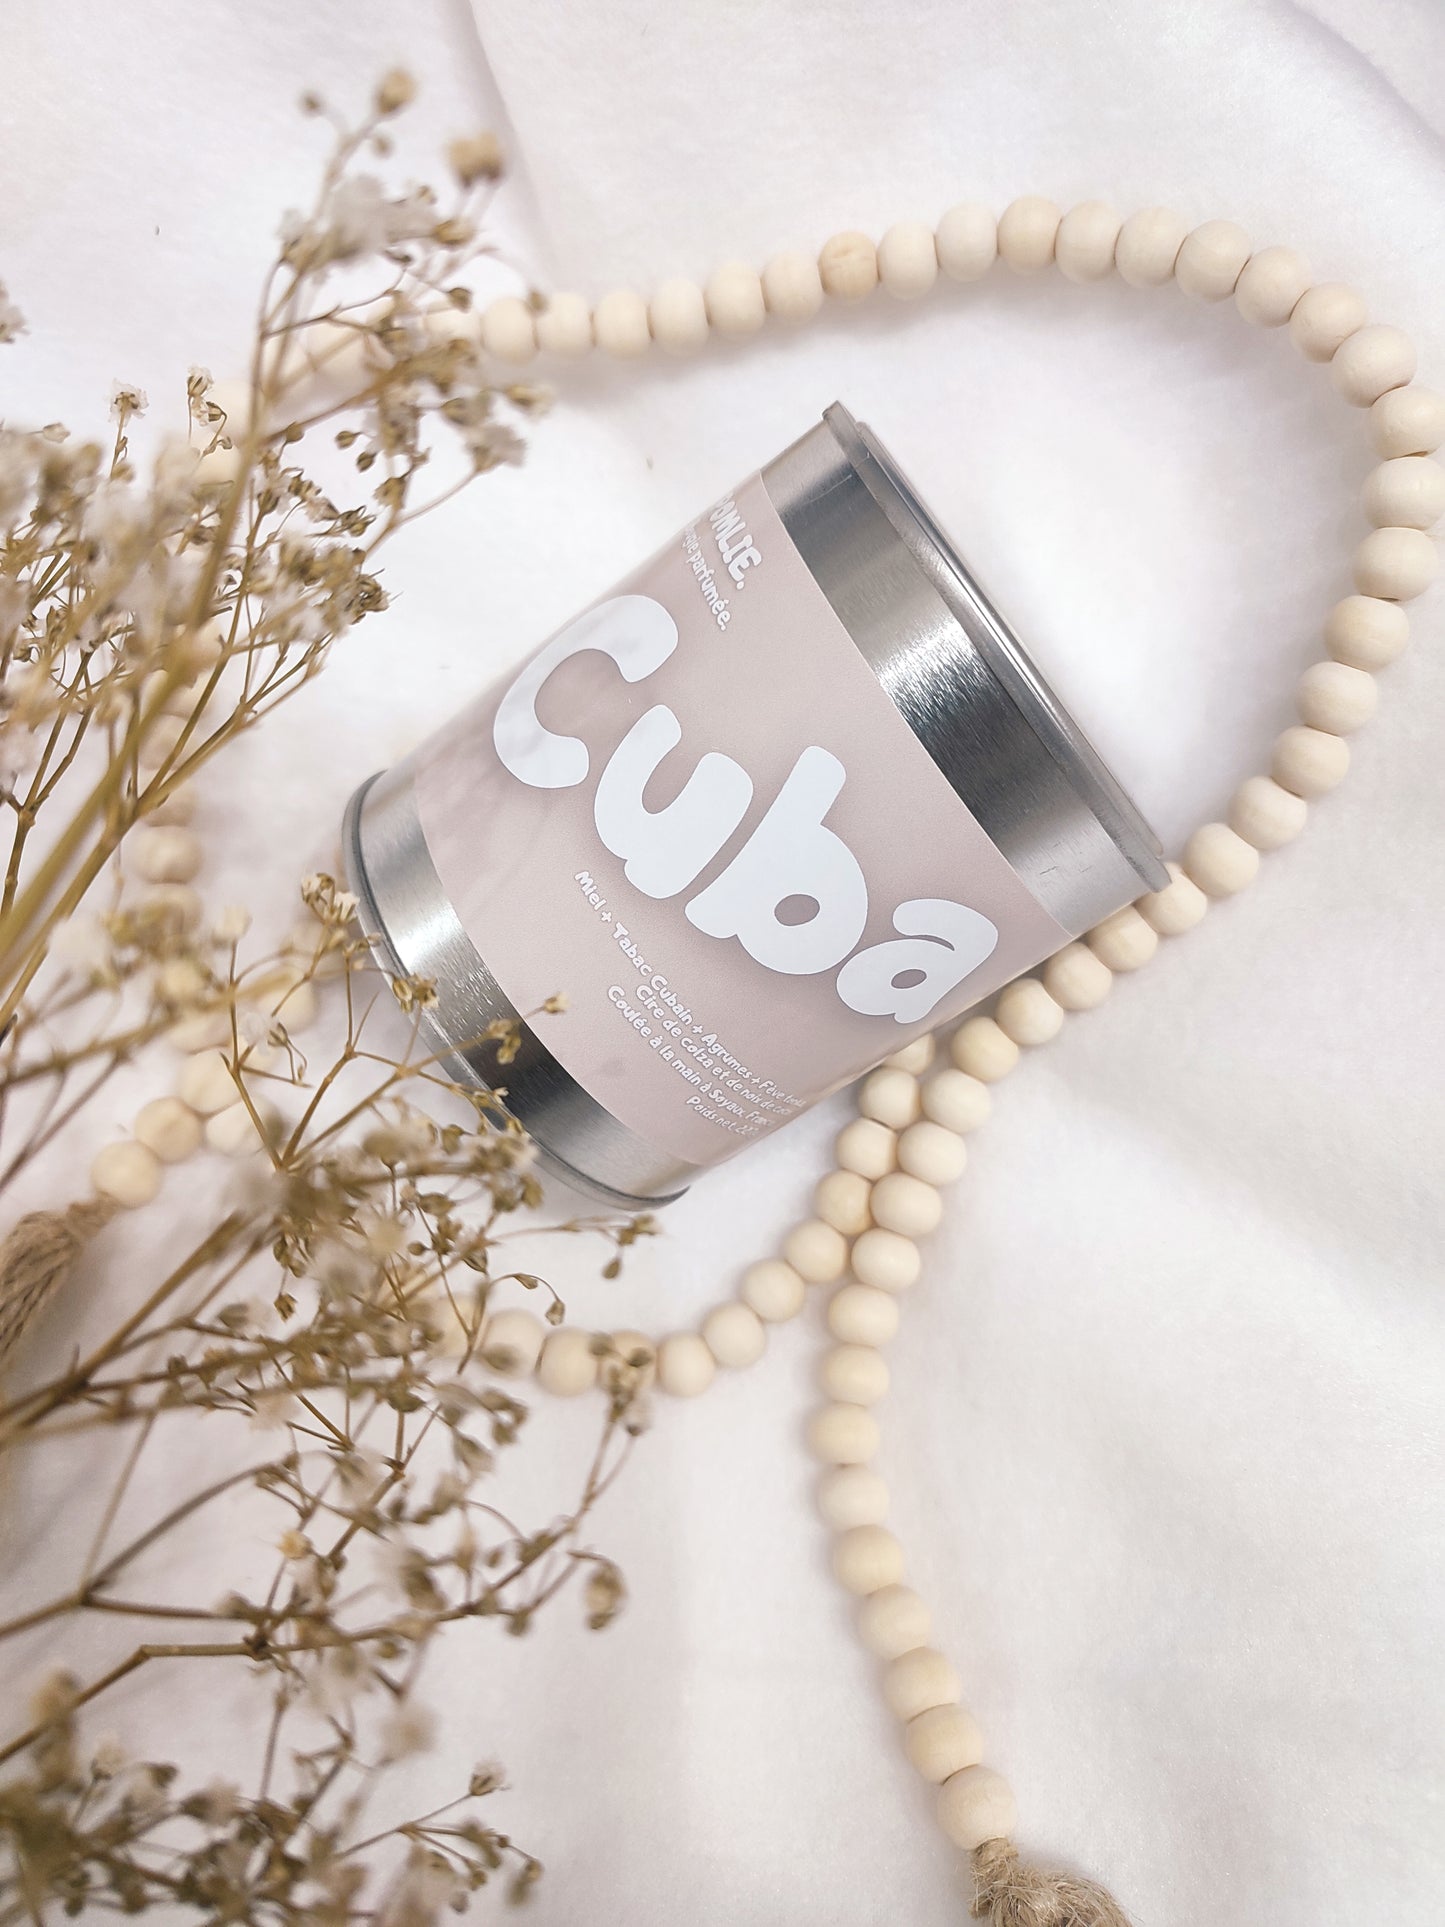 Bougie parfumée Cuba rose avec bijoux et fleurs séchées.